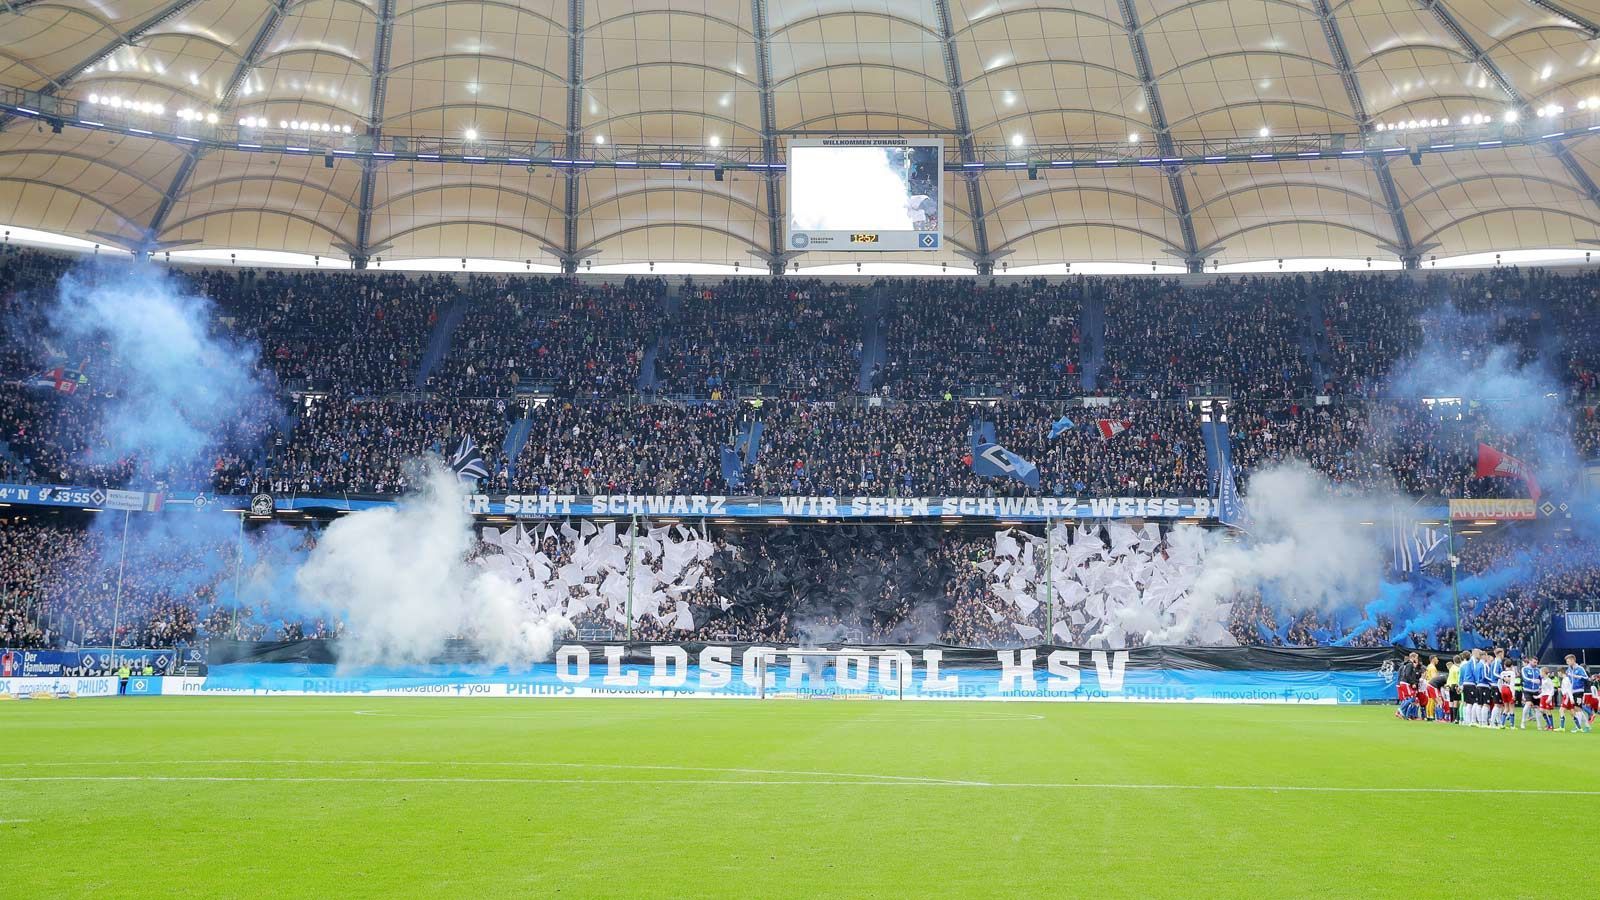 
                <strong>Pyro3</strong><br>
                Beim Einlaufen der Mannschaften durften zehn Fans zehn sogenannte Rauchtöpfe zwischen Tribüne und Spielfeld in der Nordkurve entzünden. Bunter Rauch in HSV-Farben stieg auf. 
              